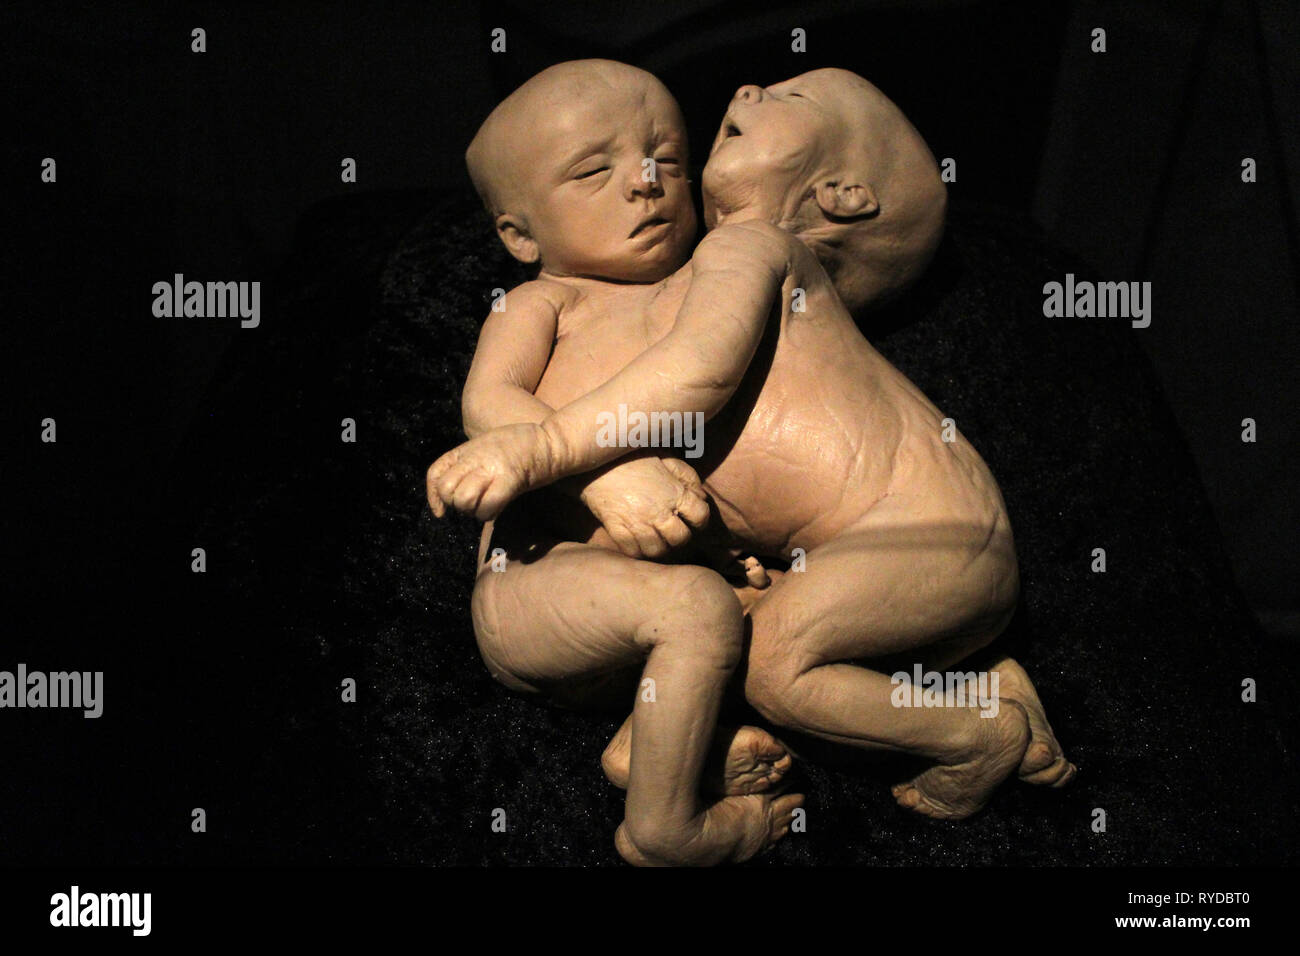 Immagini del corpo mondi plastinates al Menschen Museum di Berlino. Gemelli siamesi Foto Stock